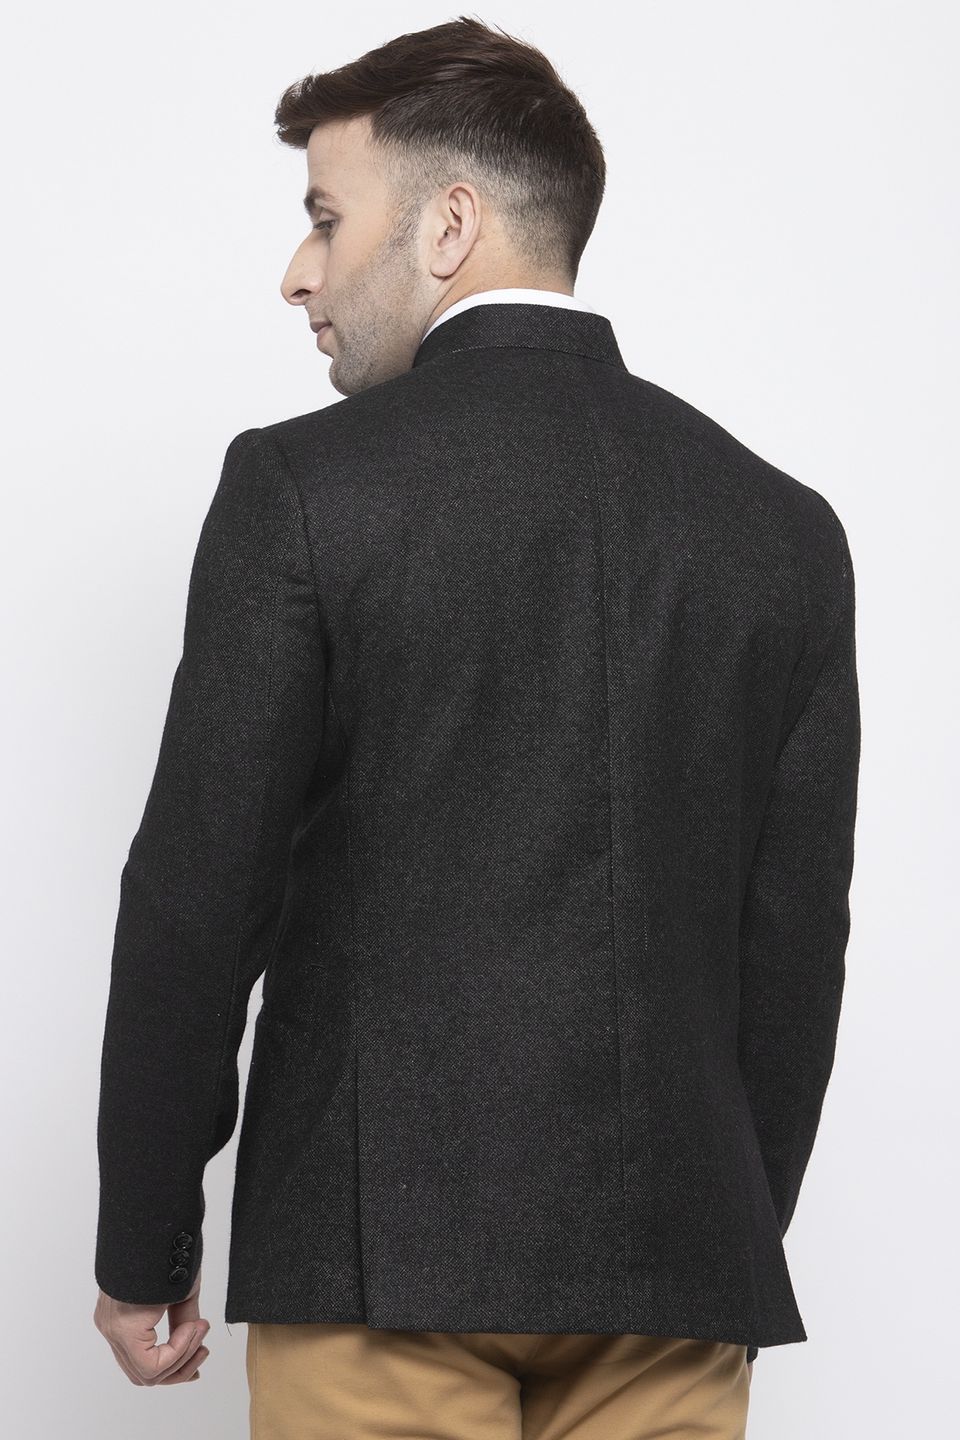 WINTAGE Men's Tweed Wool Casual and Festive Blazer Coat Jacket:Black